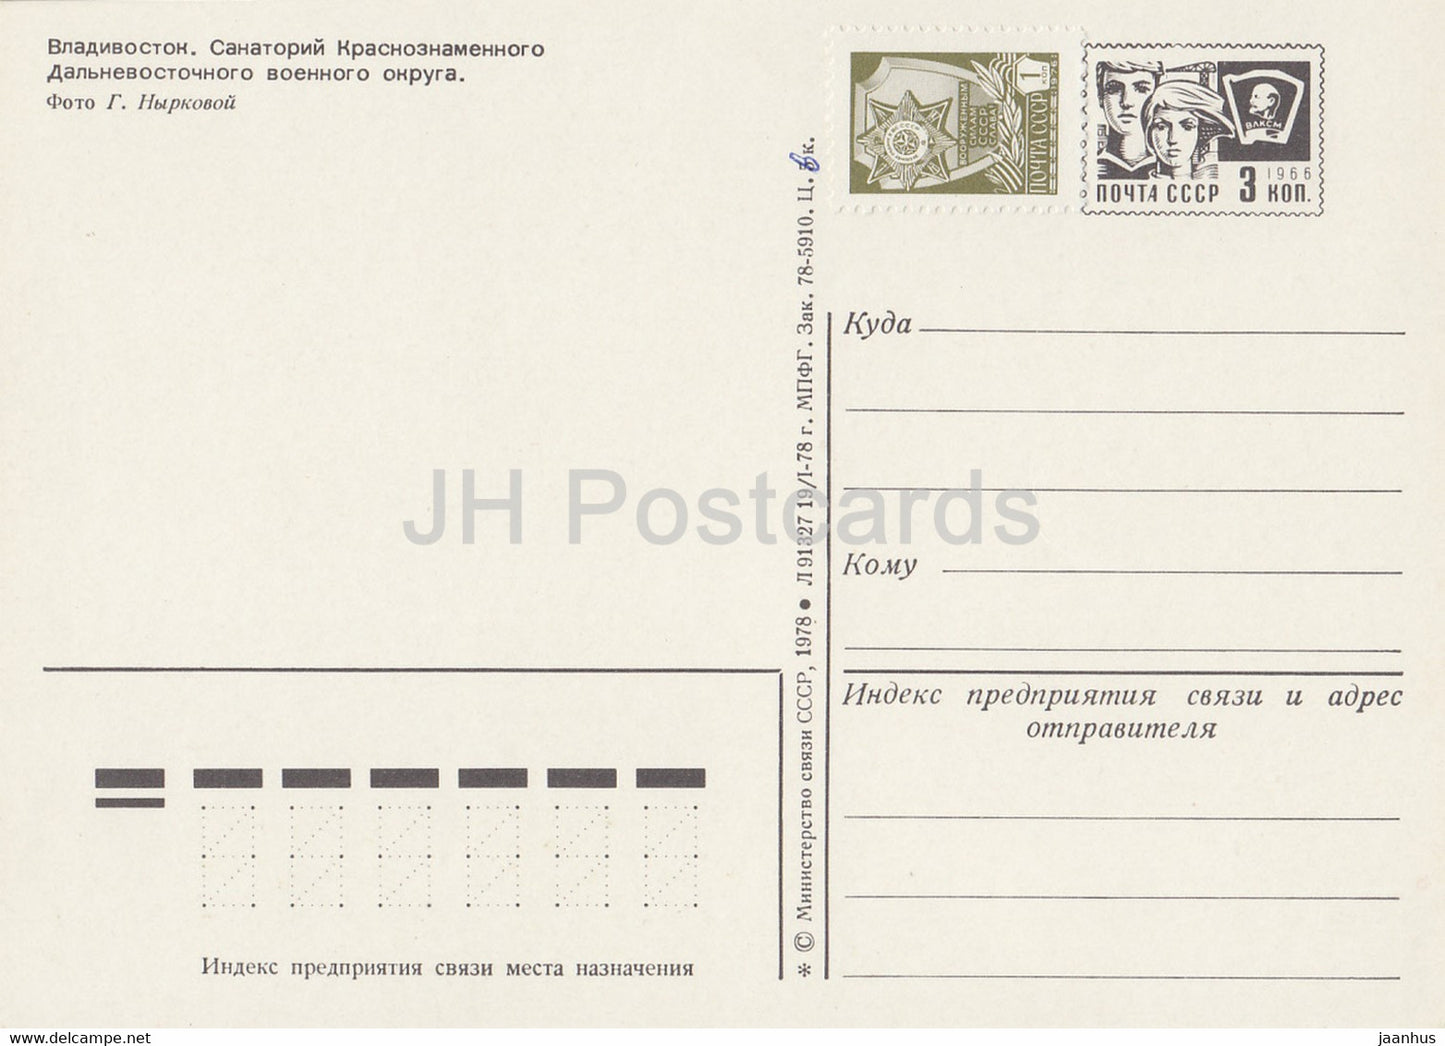 Vladivostok - sanatorium of the Far Eastern Military District - 1 - postal stationery - 1978 - Russia USSR - unused